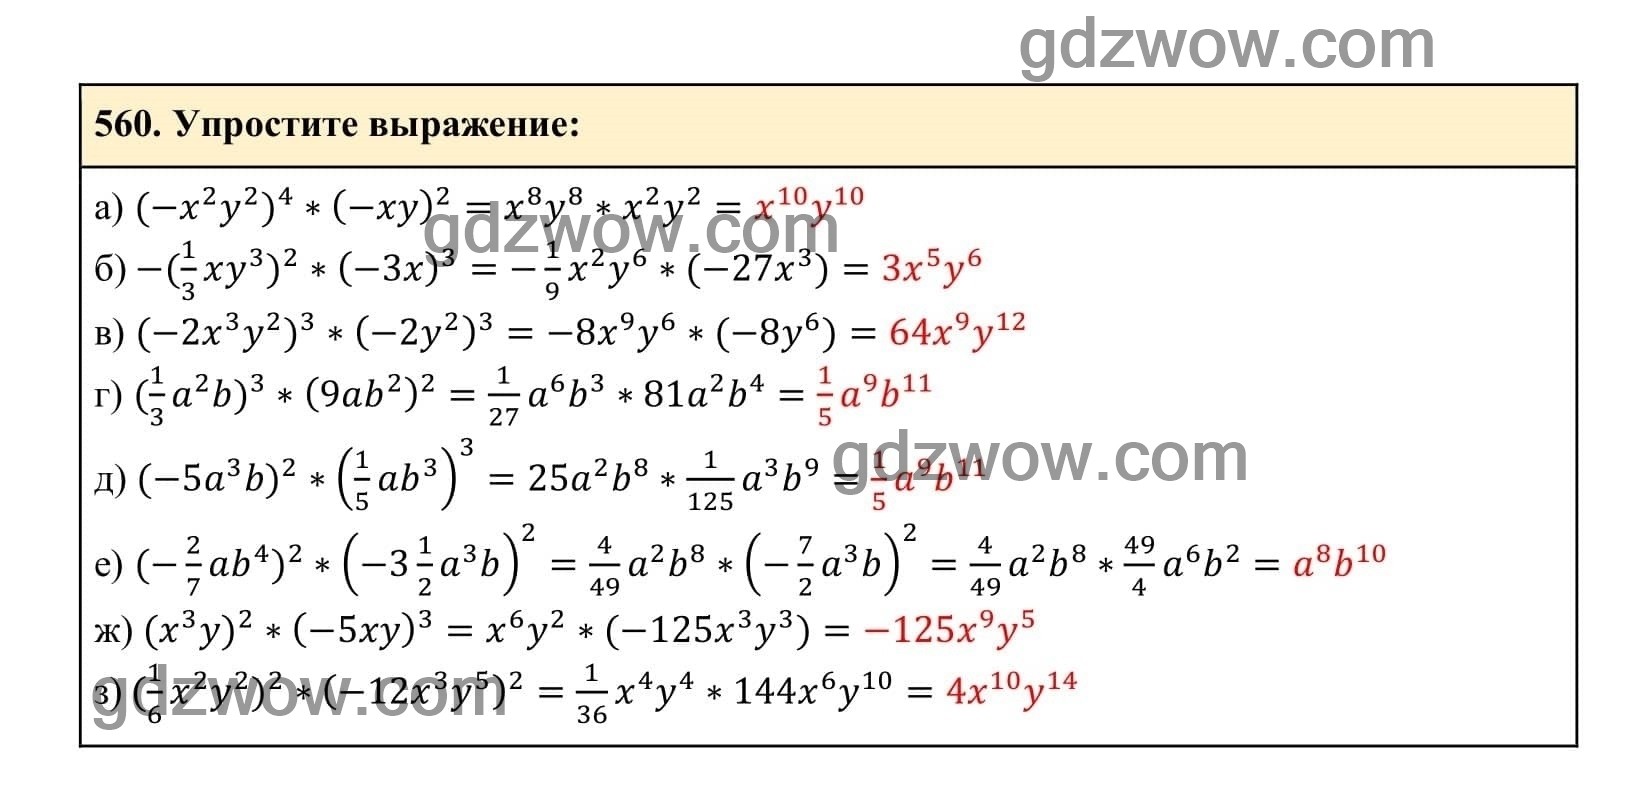 Упражнение 560 - ГДЗ по Алгебре 7 класс Учебник Макарычев (решебник) - GDZwow